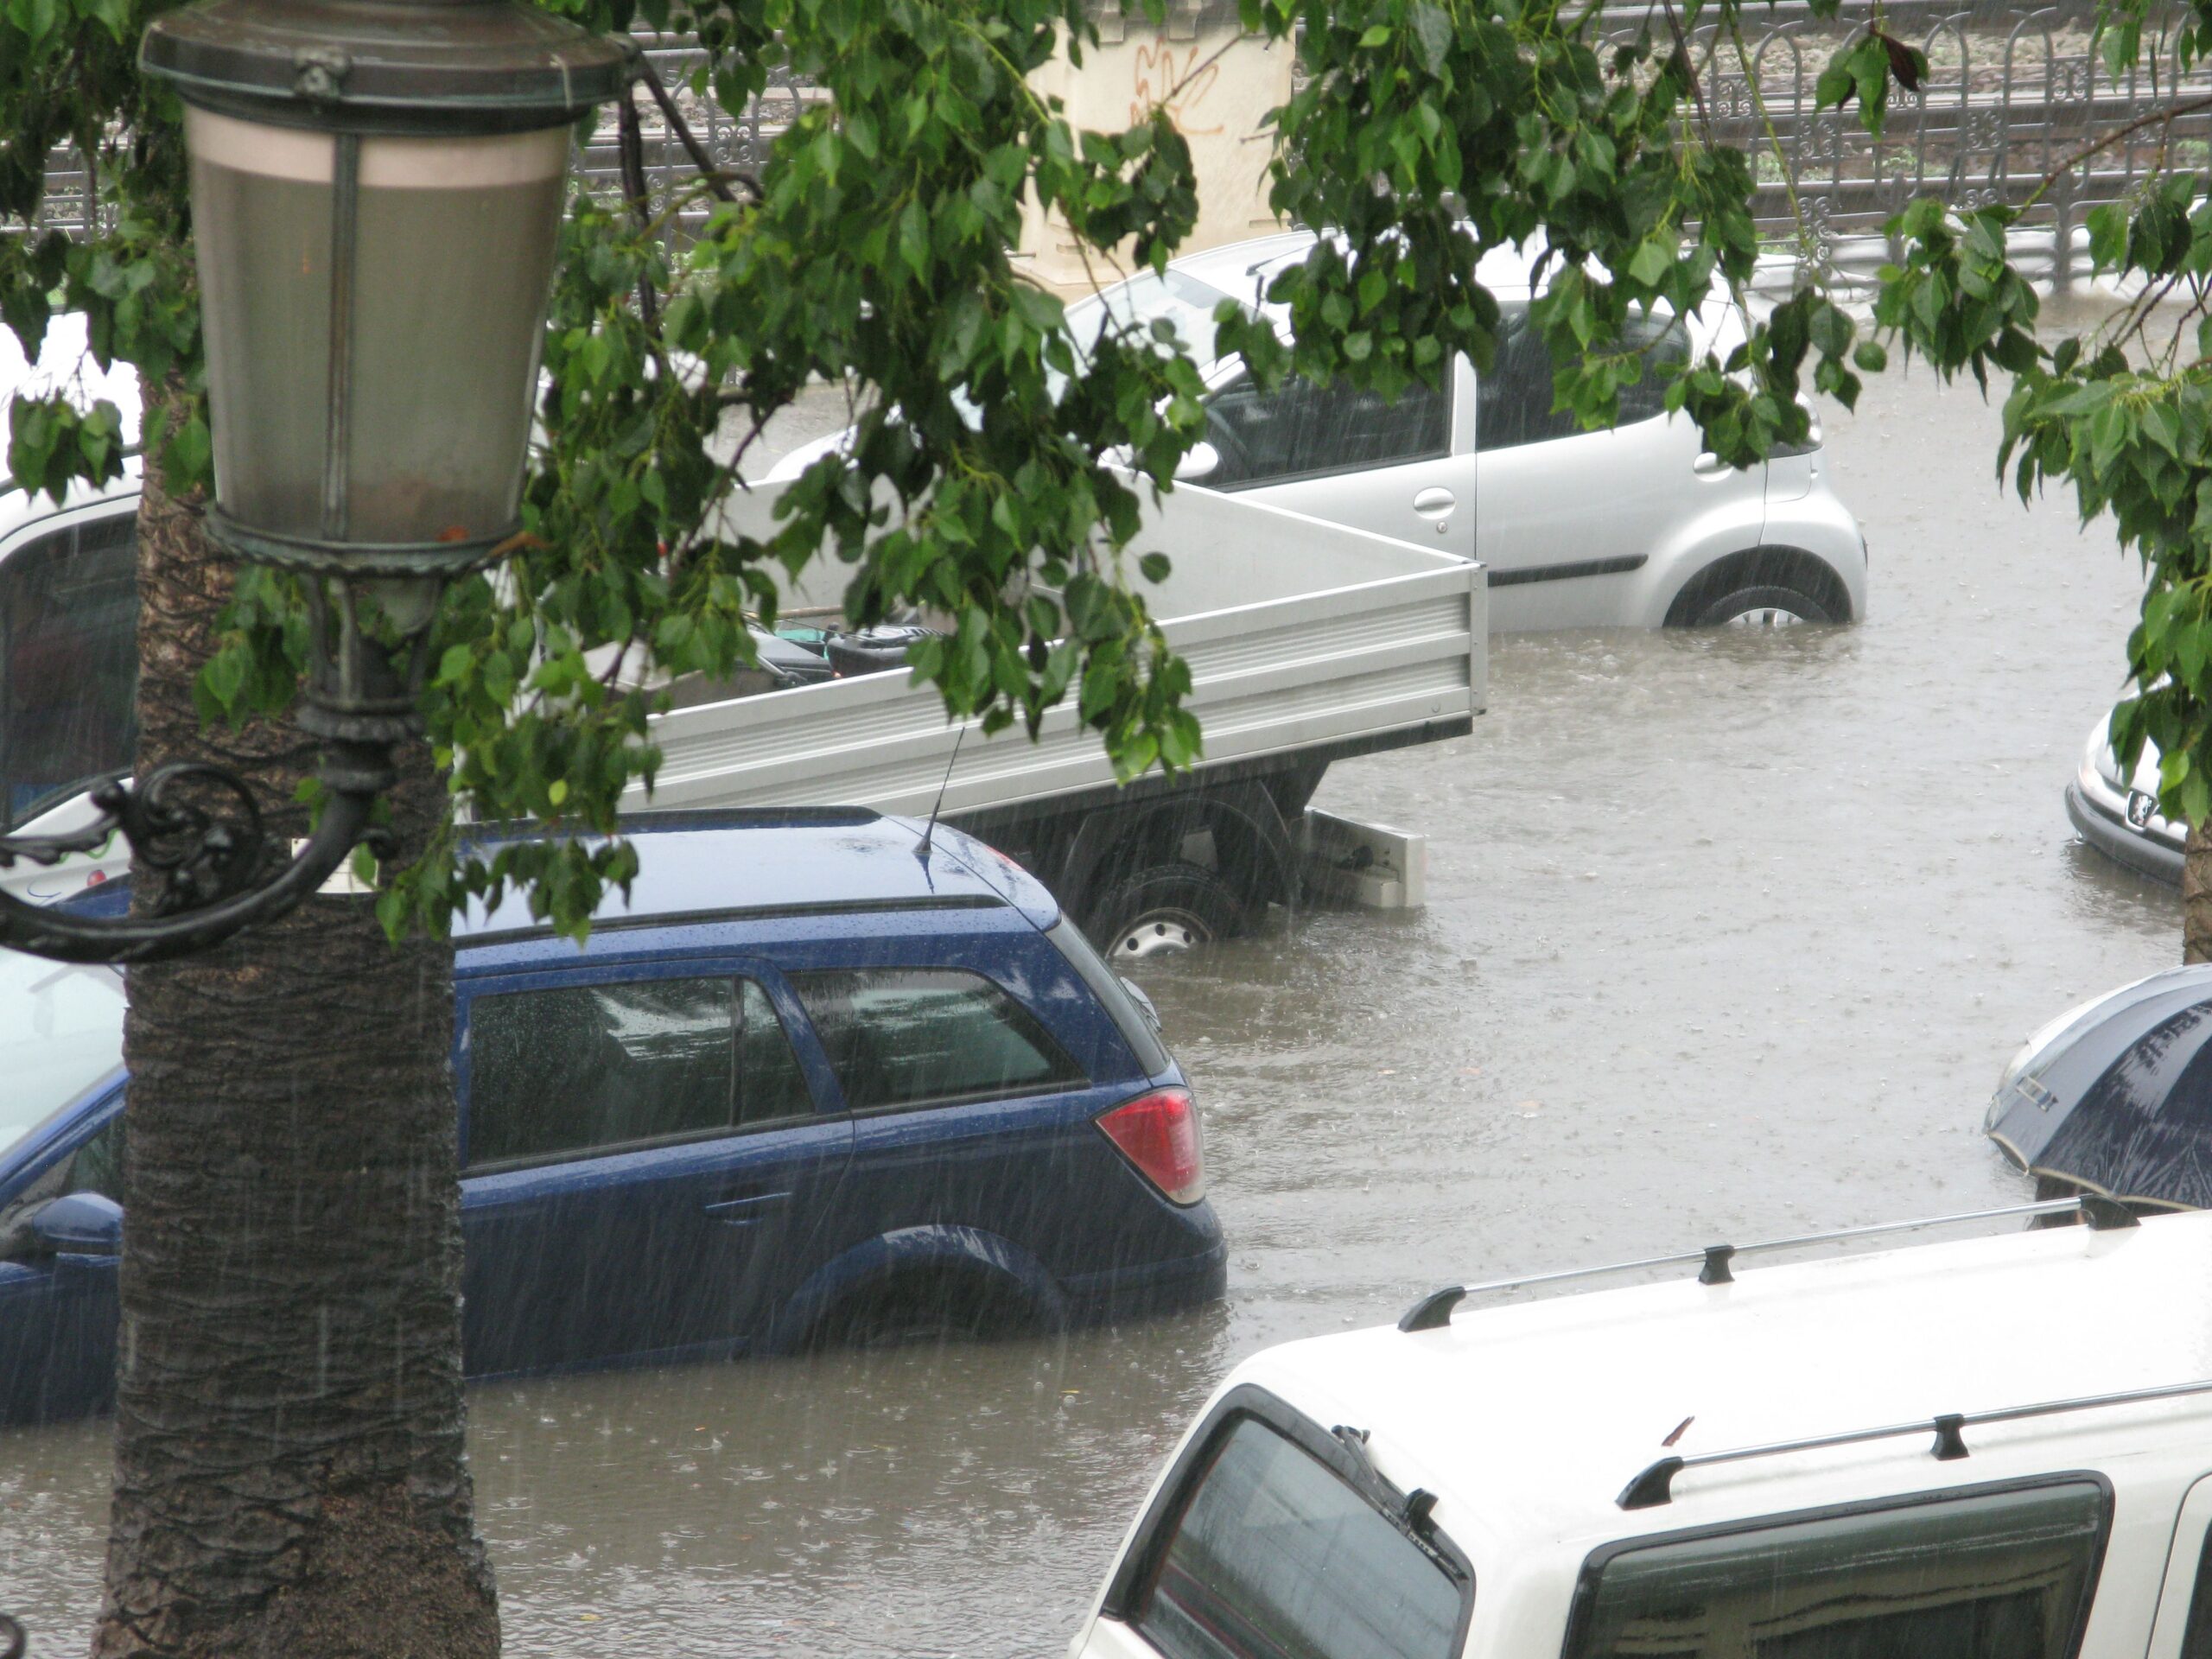 Podpowiadamy, jak rozpoznać auto po powodzi